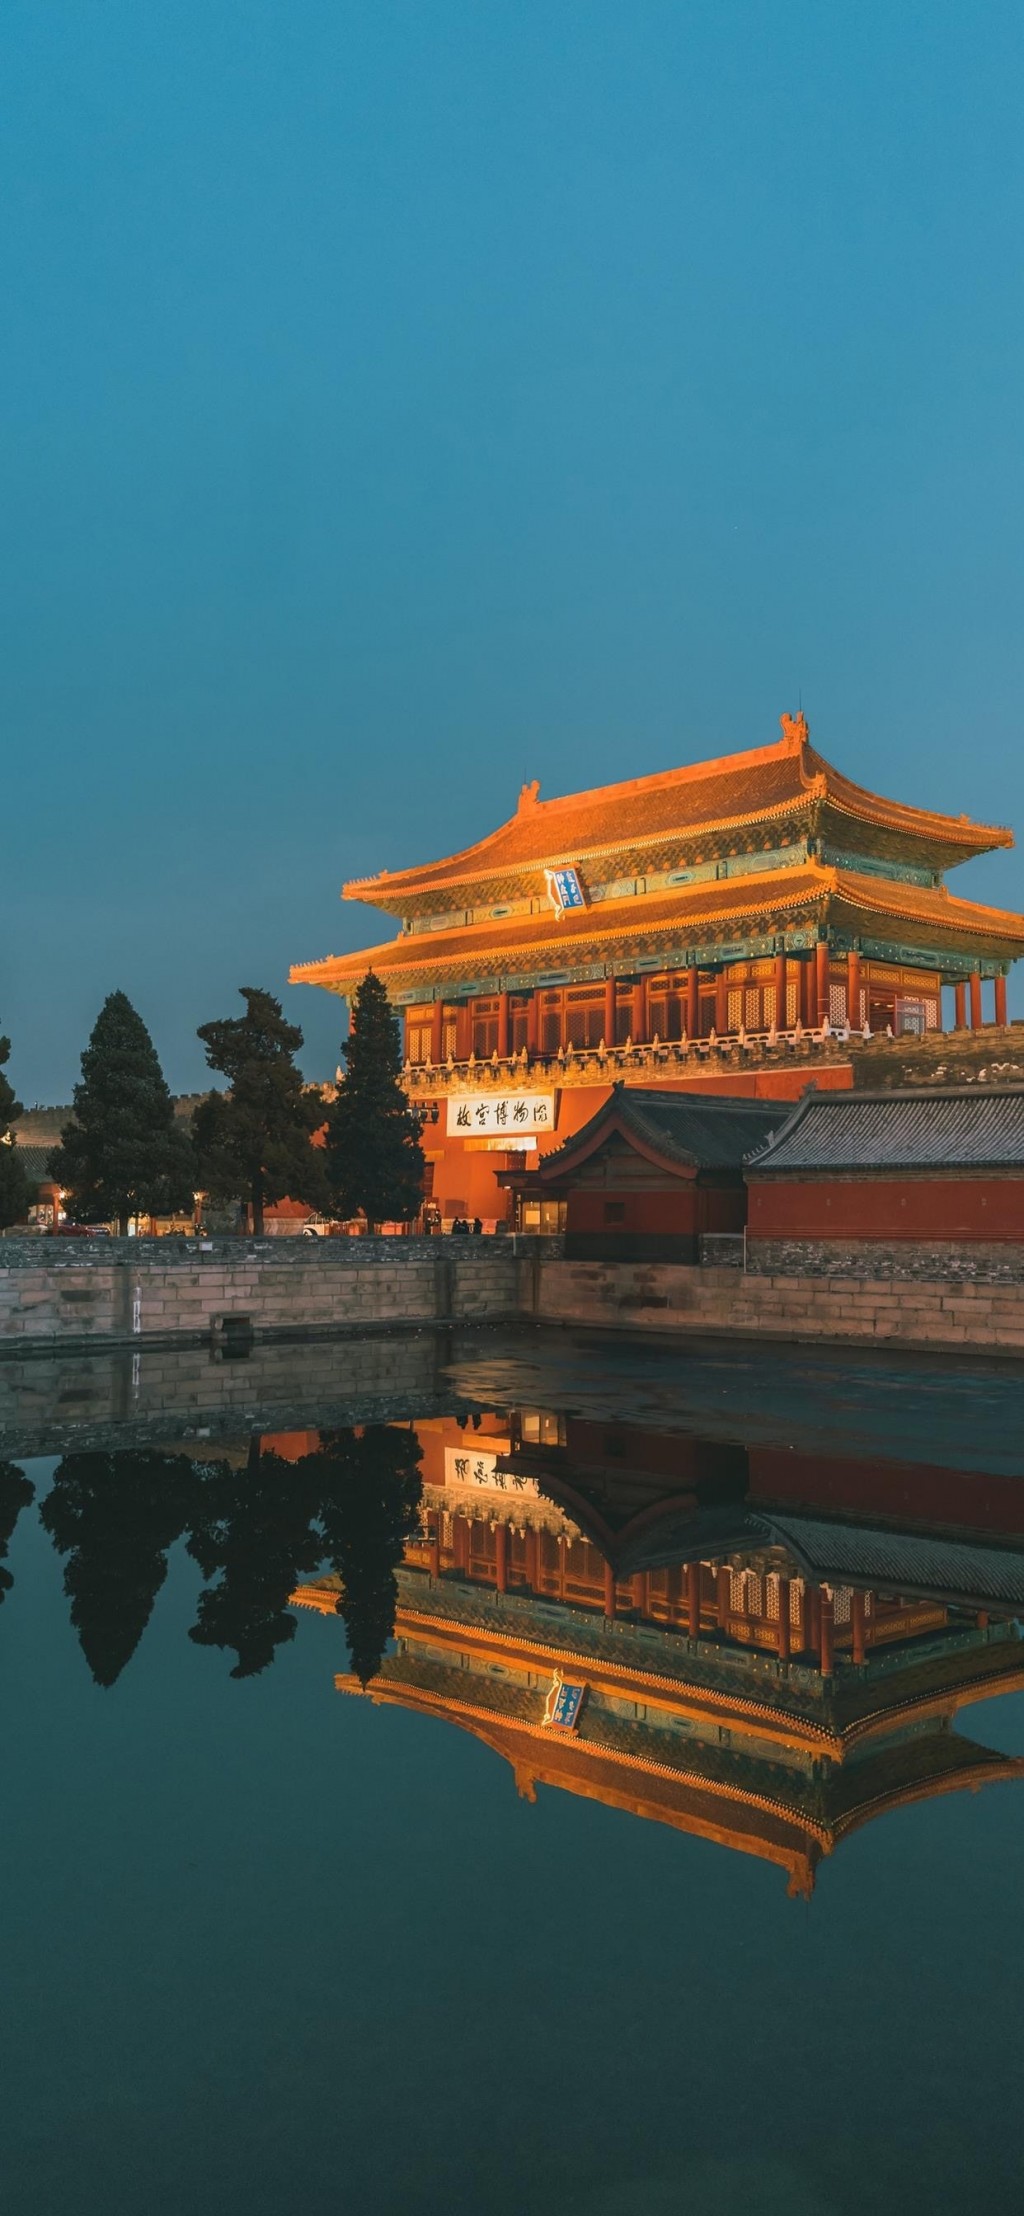 故宫绝美风景中国风格手机壁纸